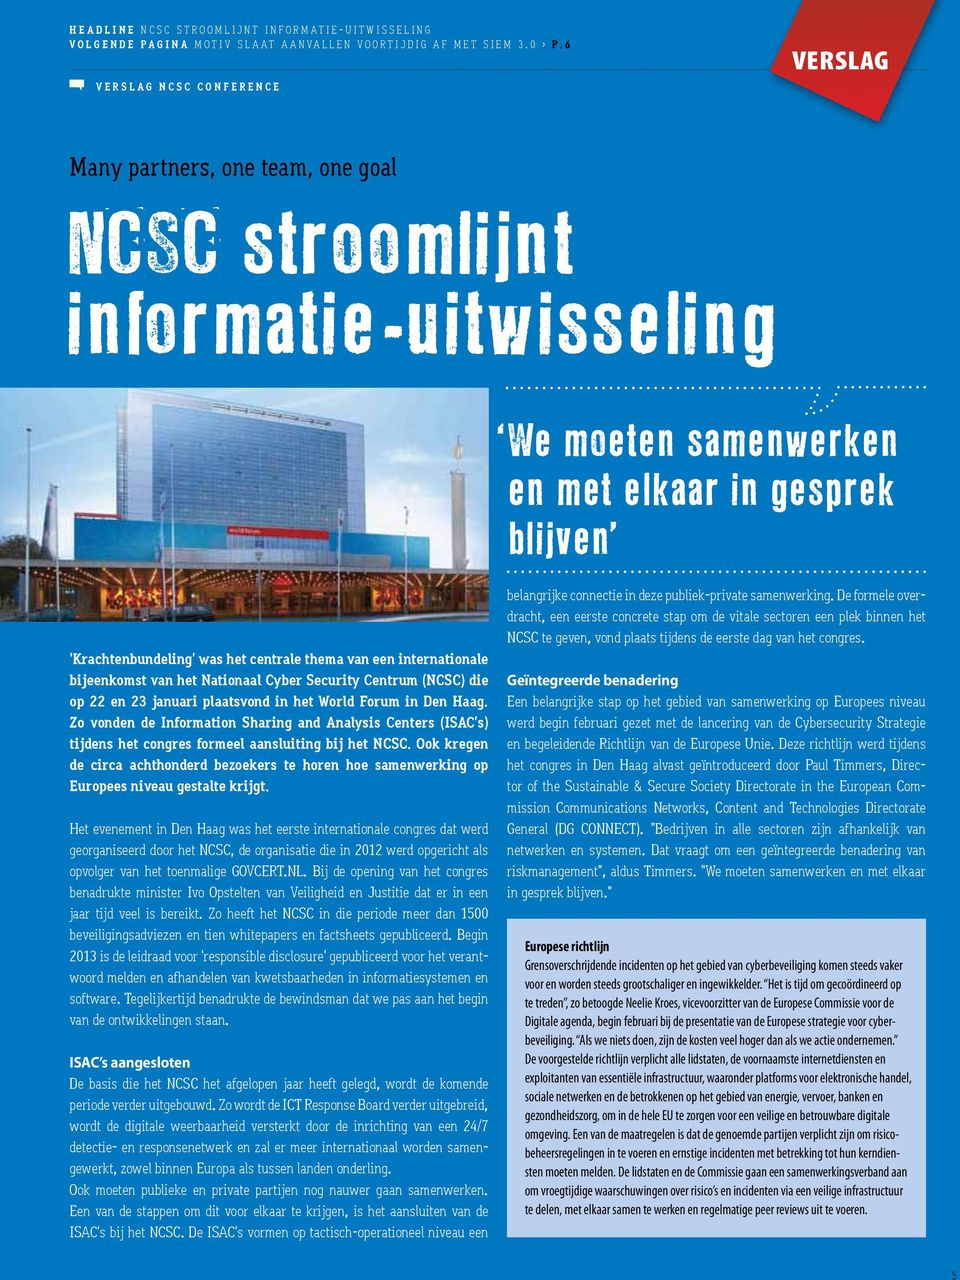 thema van een internationale bijeenkomst van het Nationaal Cyber Security Centrum (NCSC) die op 22 en 23 januari plaatsvond in het World Forum in Den Haag.